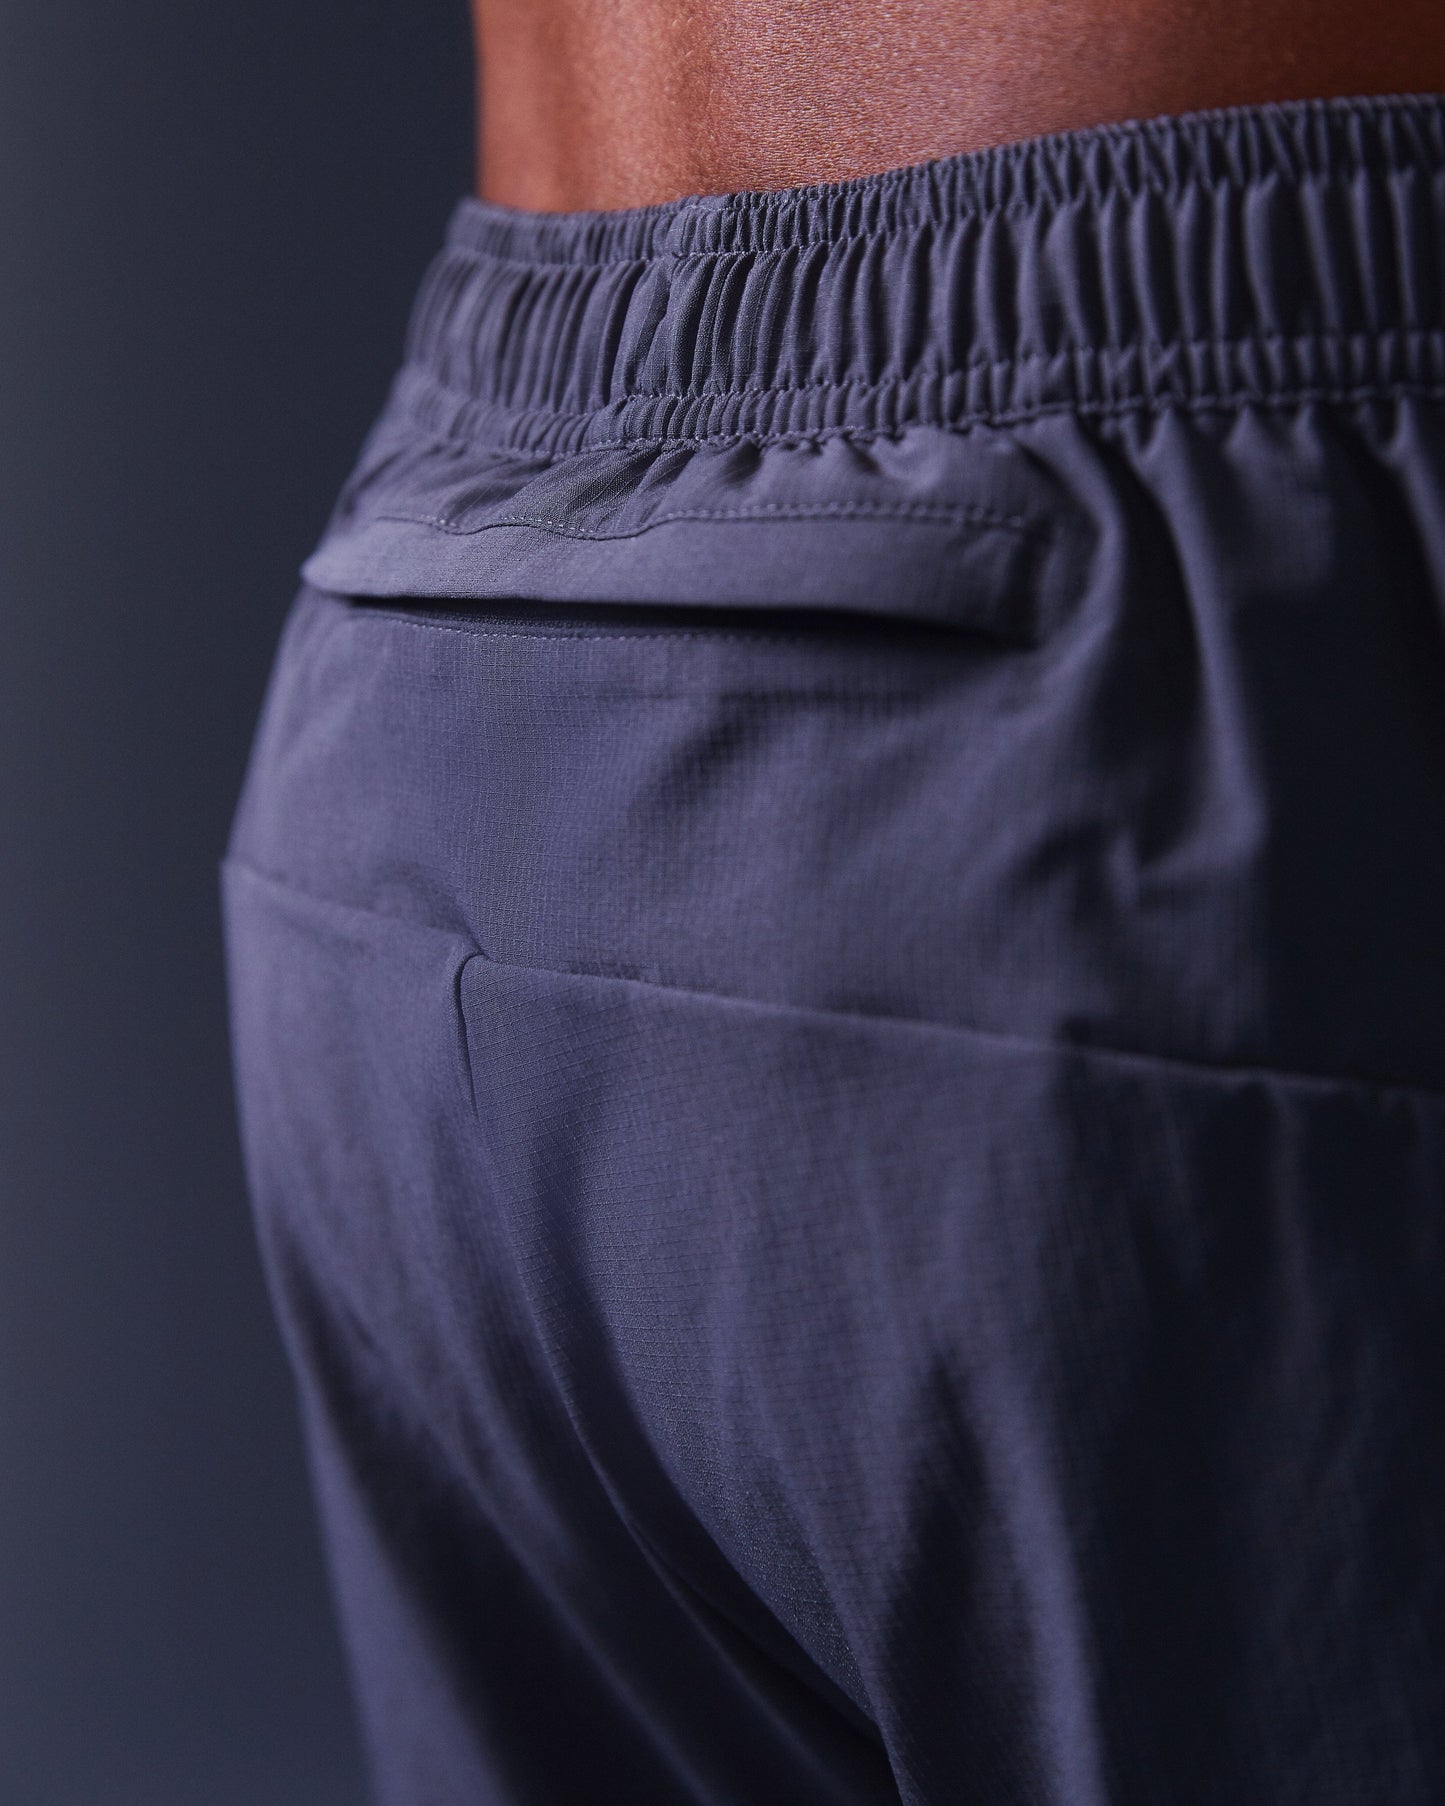 SUDU SRP 01 Run Pants - Iron Gate / Blazing Yellow Pants